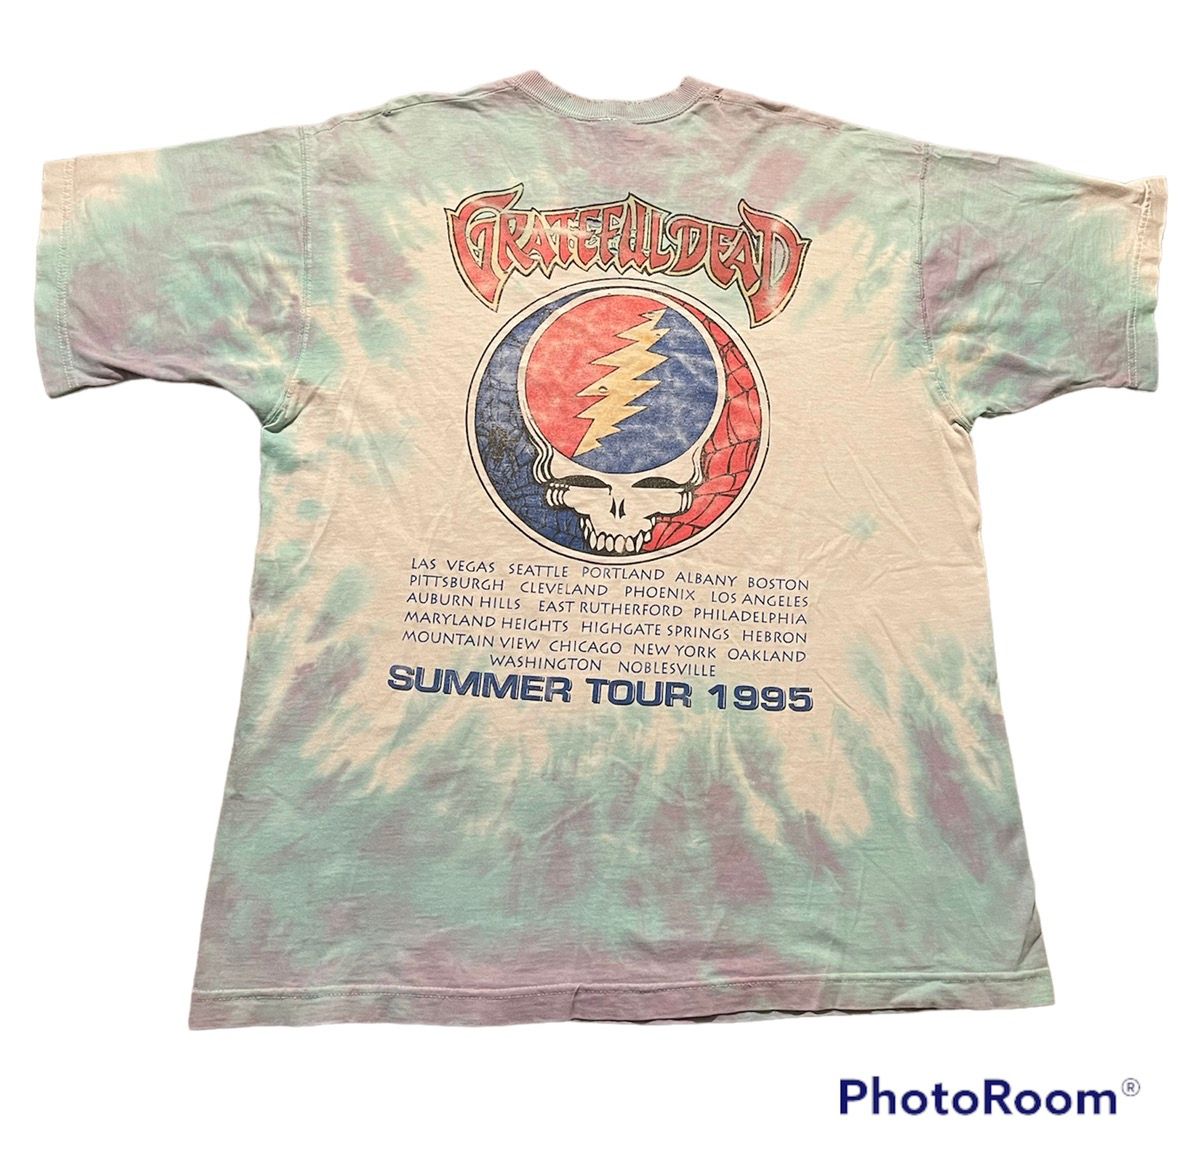 Vintage Vintage Grateful Dead Jester 1995 Summer Shirt XL Tour Jerry Size US XL / EU 56 / 4 - 2 Preview